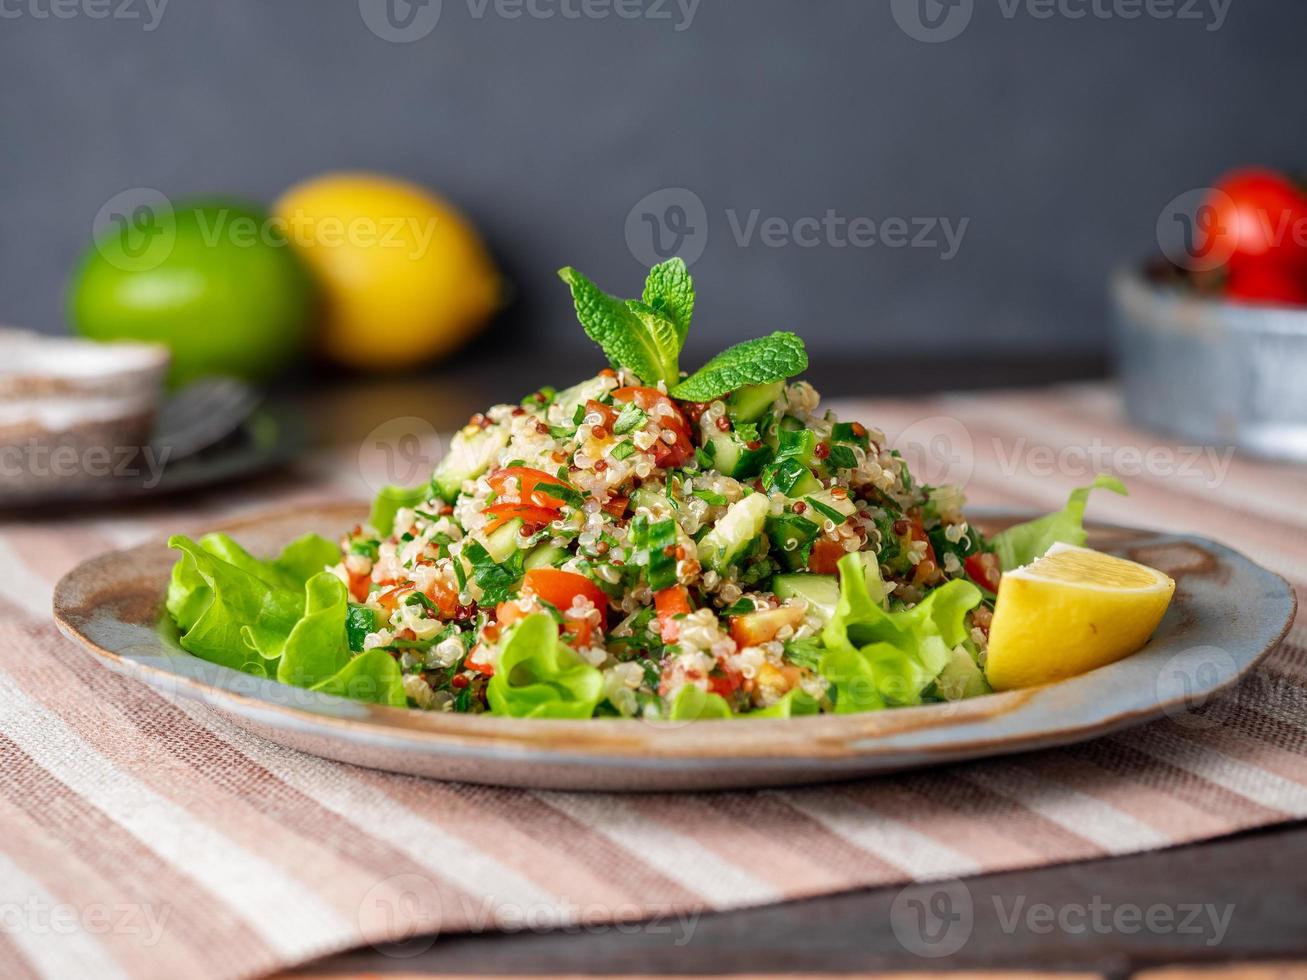 taboulehsalade met quinoa. Oosters eten met groentenmix, veganistisch dieet. zijaanzicht, linnen servet, oud bord foto